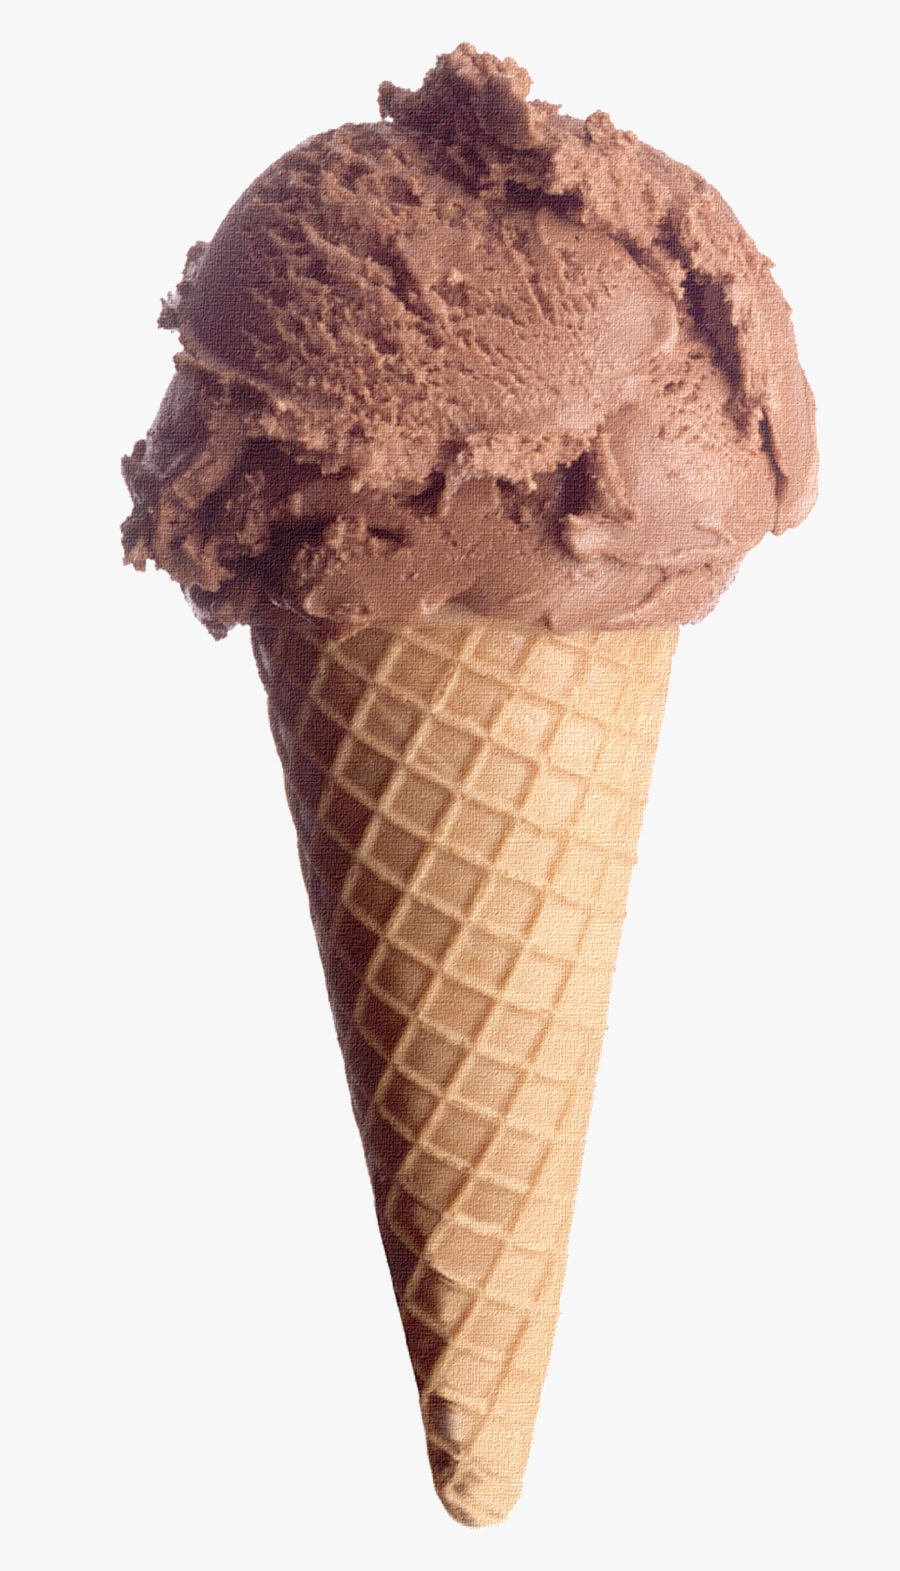 Ice Cream Png Chocolate - Ice Cream Chocolate Cone, Transparent Clipart